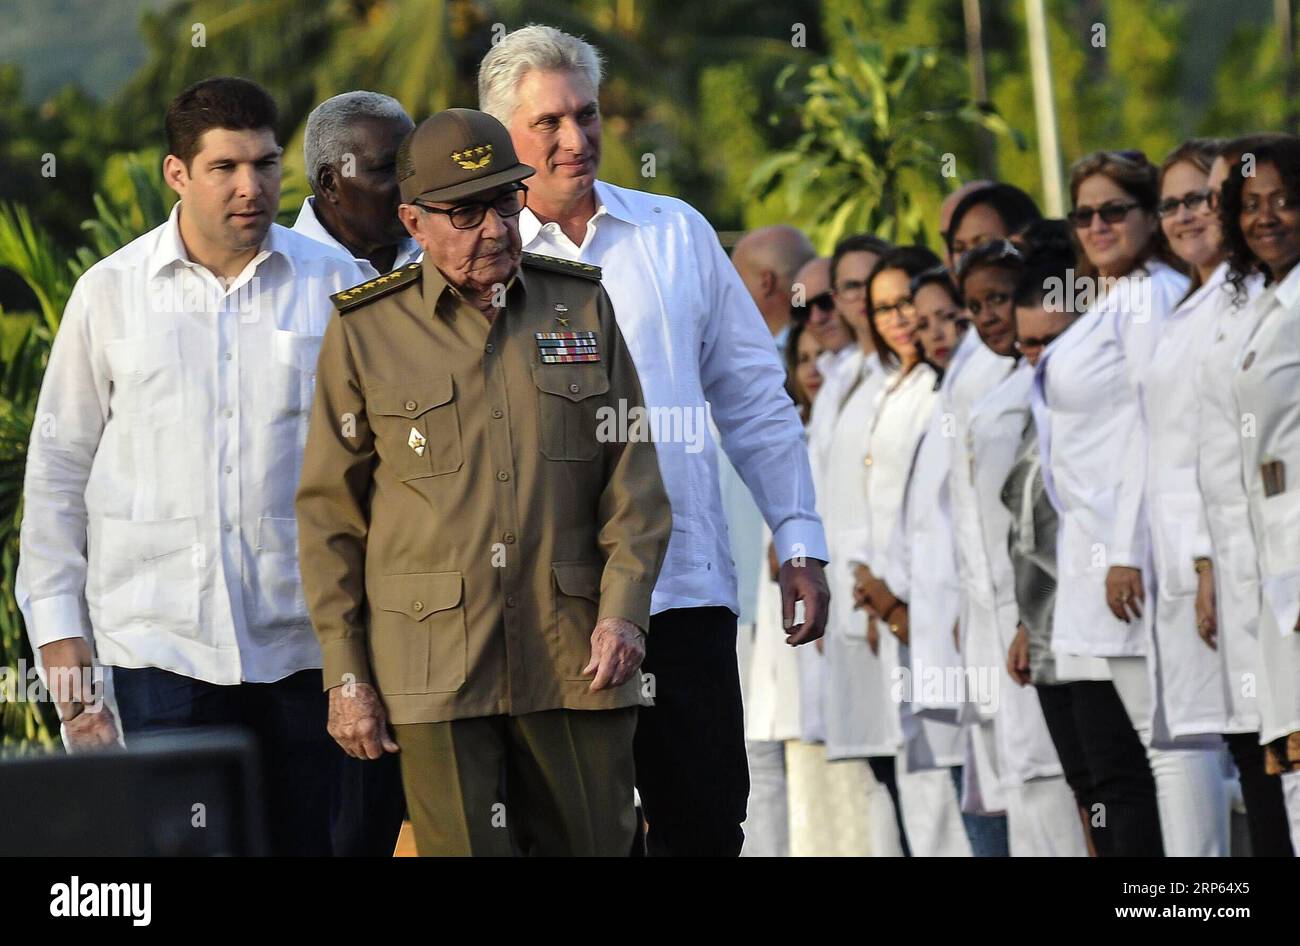 (190102) -- LA HAVANE, 2 janvier 2019 -- Raul Castro (avant C), premier secrétaire du Comité central du Parti communiste de Cuba et le président cubain Miguel Diaz-Canel (4e L) assistent à une cérémonie marquant le 60e anniversaire de la victoire révolutionnaire de Cuba au cimetière Santa Ifigenia à Santiago de Cuba, Cuba, le 1 janvier 2019. Raul Castro a réitéré mardi la volonté de sa nation de coexister en paix avec les États-Unis malgré leurs divergences politiques. Nous avons la volonté de coexister de manière civilisée, pacifique, respectueuse et mutuellement bénéfique avec les États-Unis, Castro Banque D'Images